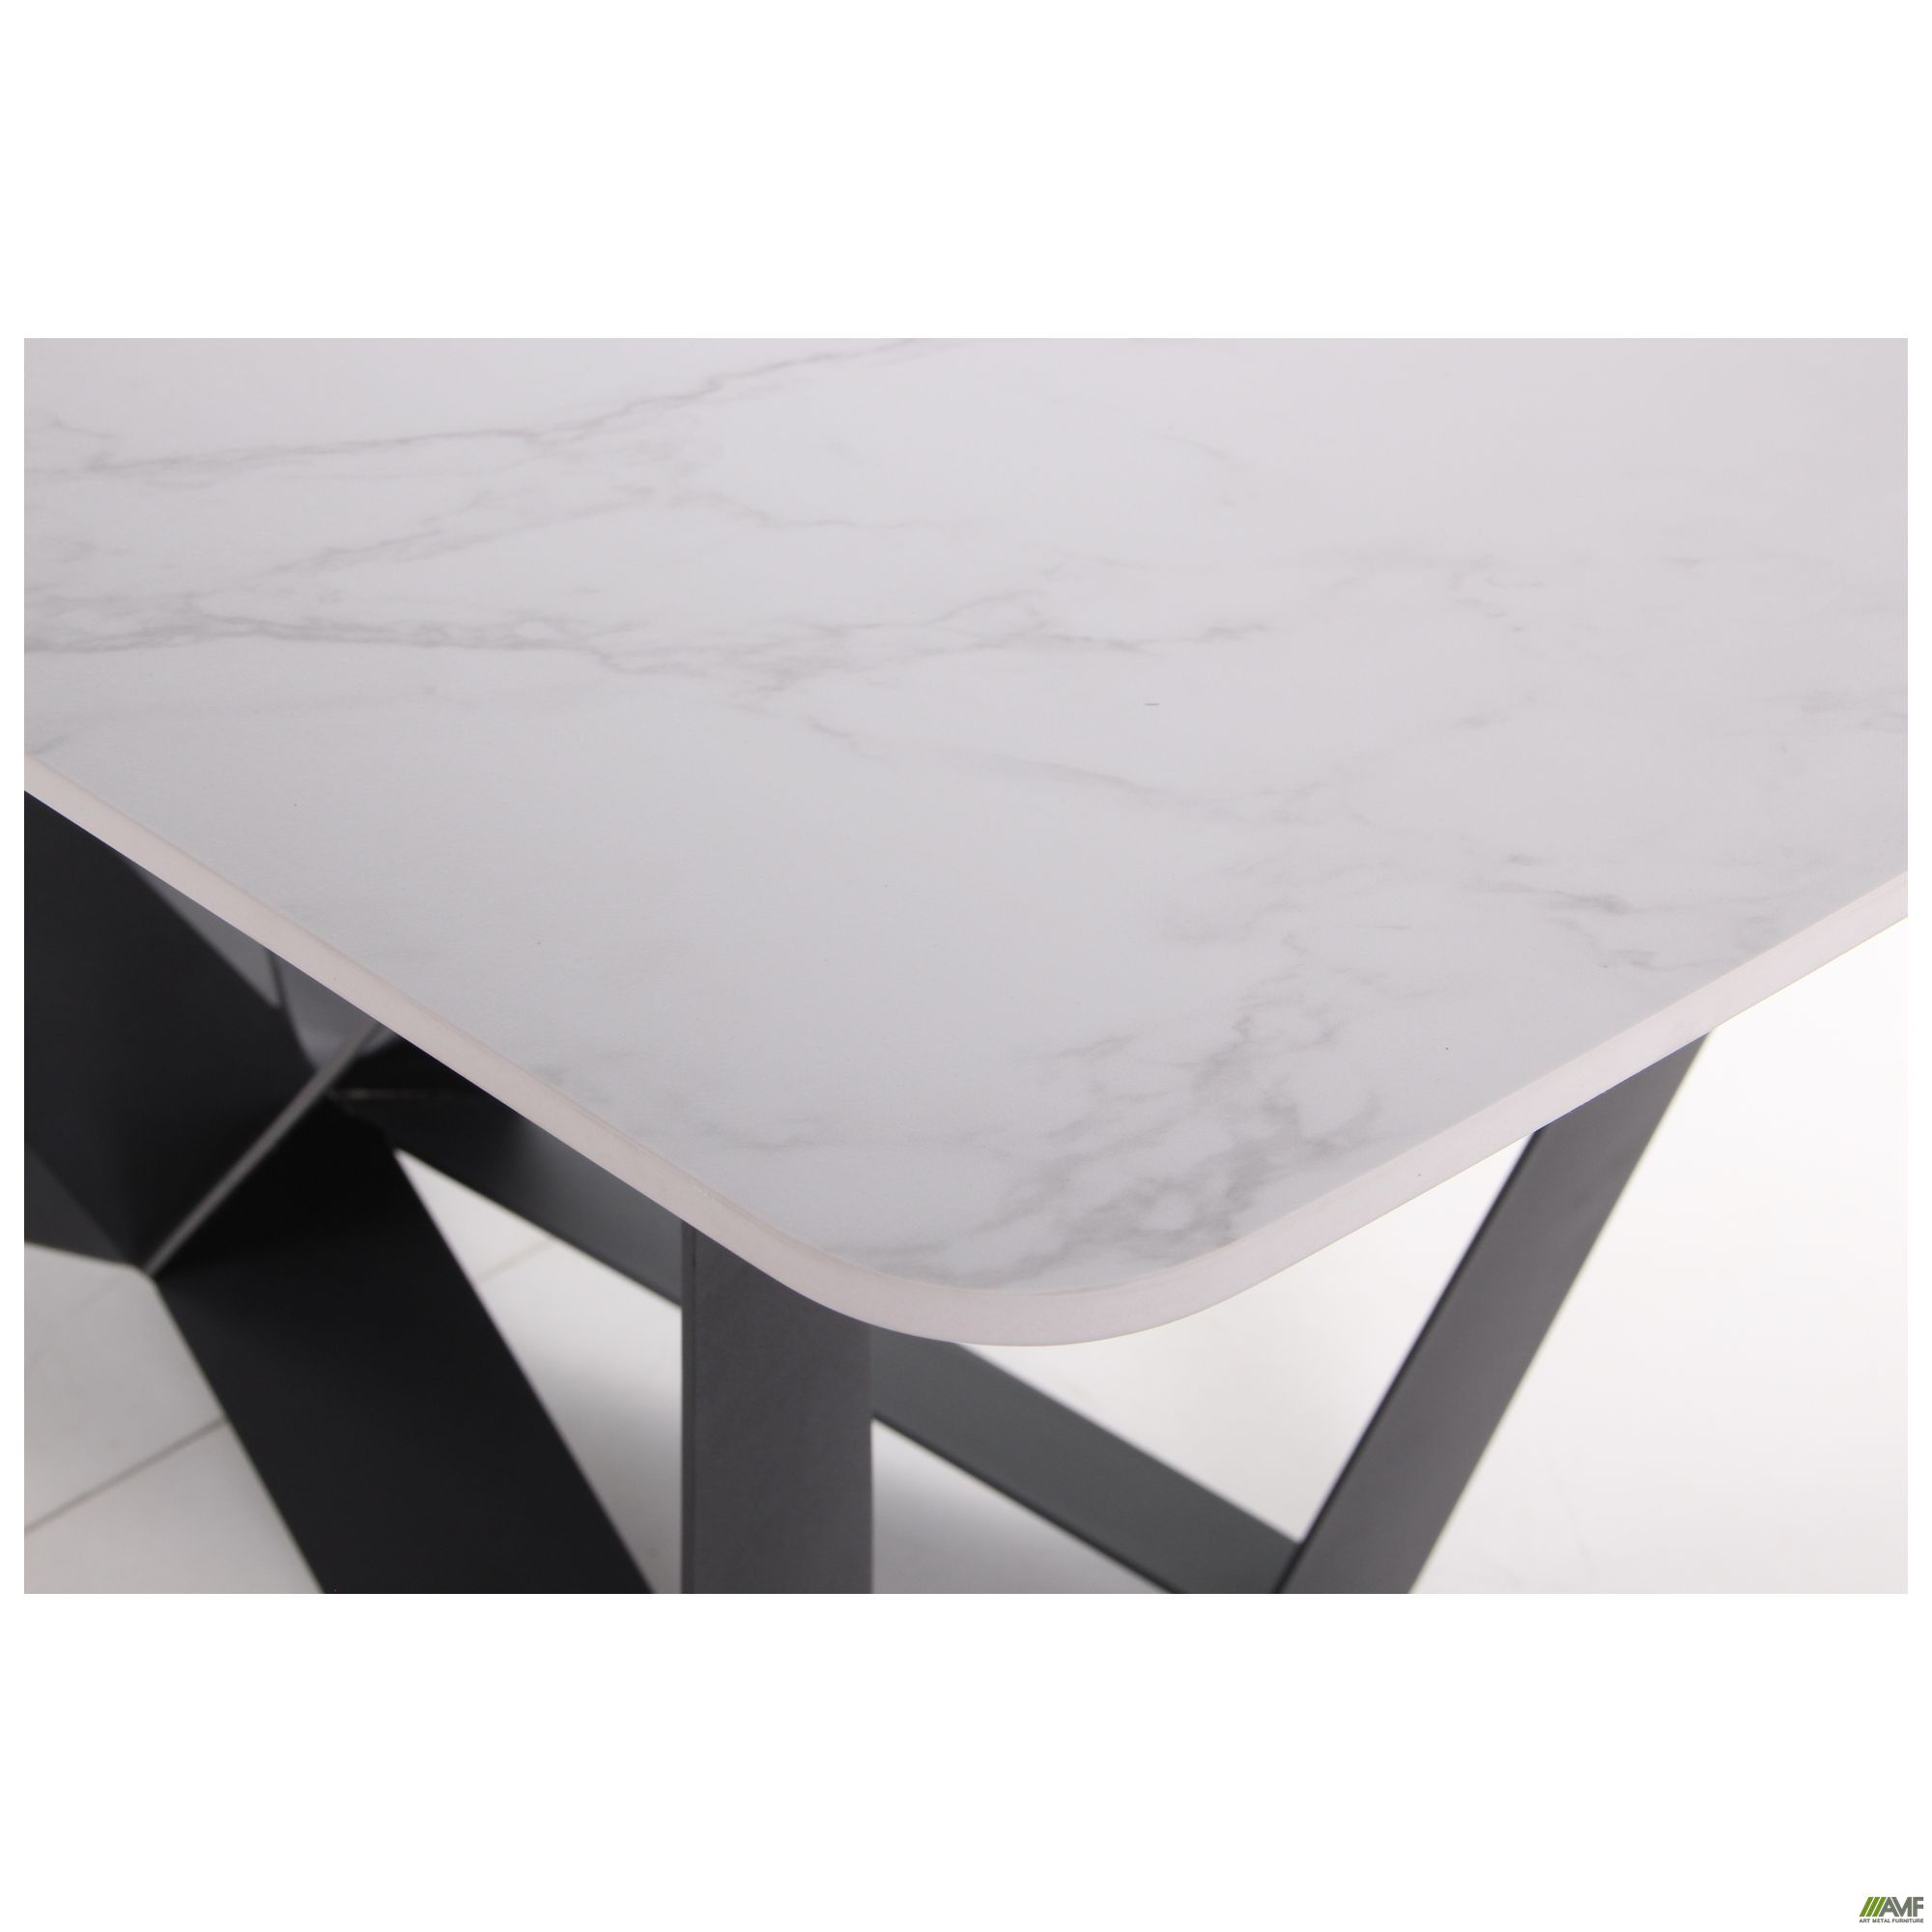 Фото 9 - Стол обеденный William black/ceramics Carrara bianco 